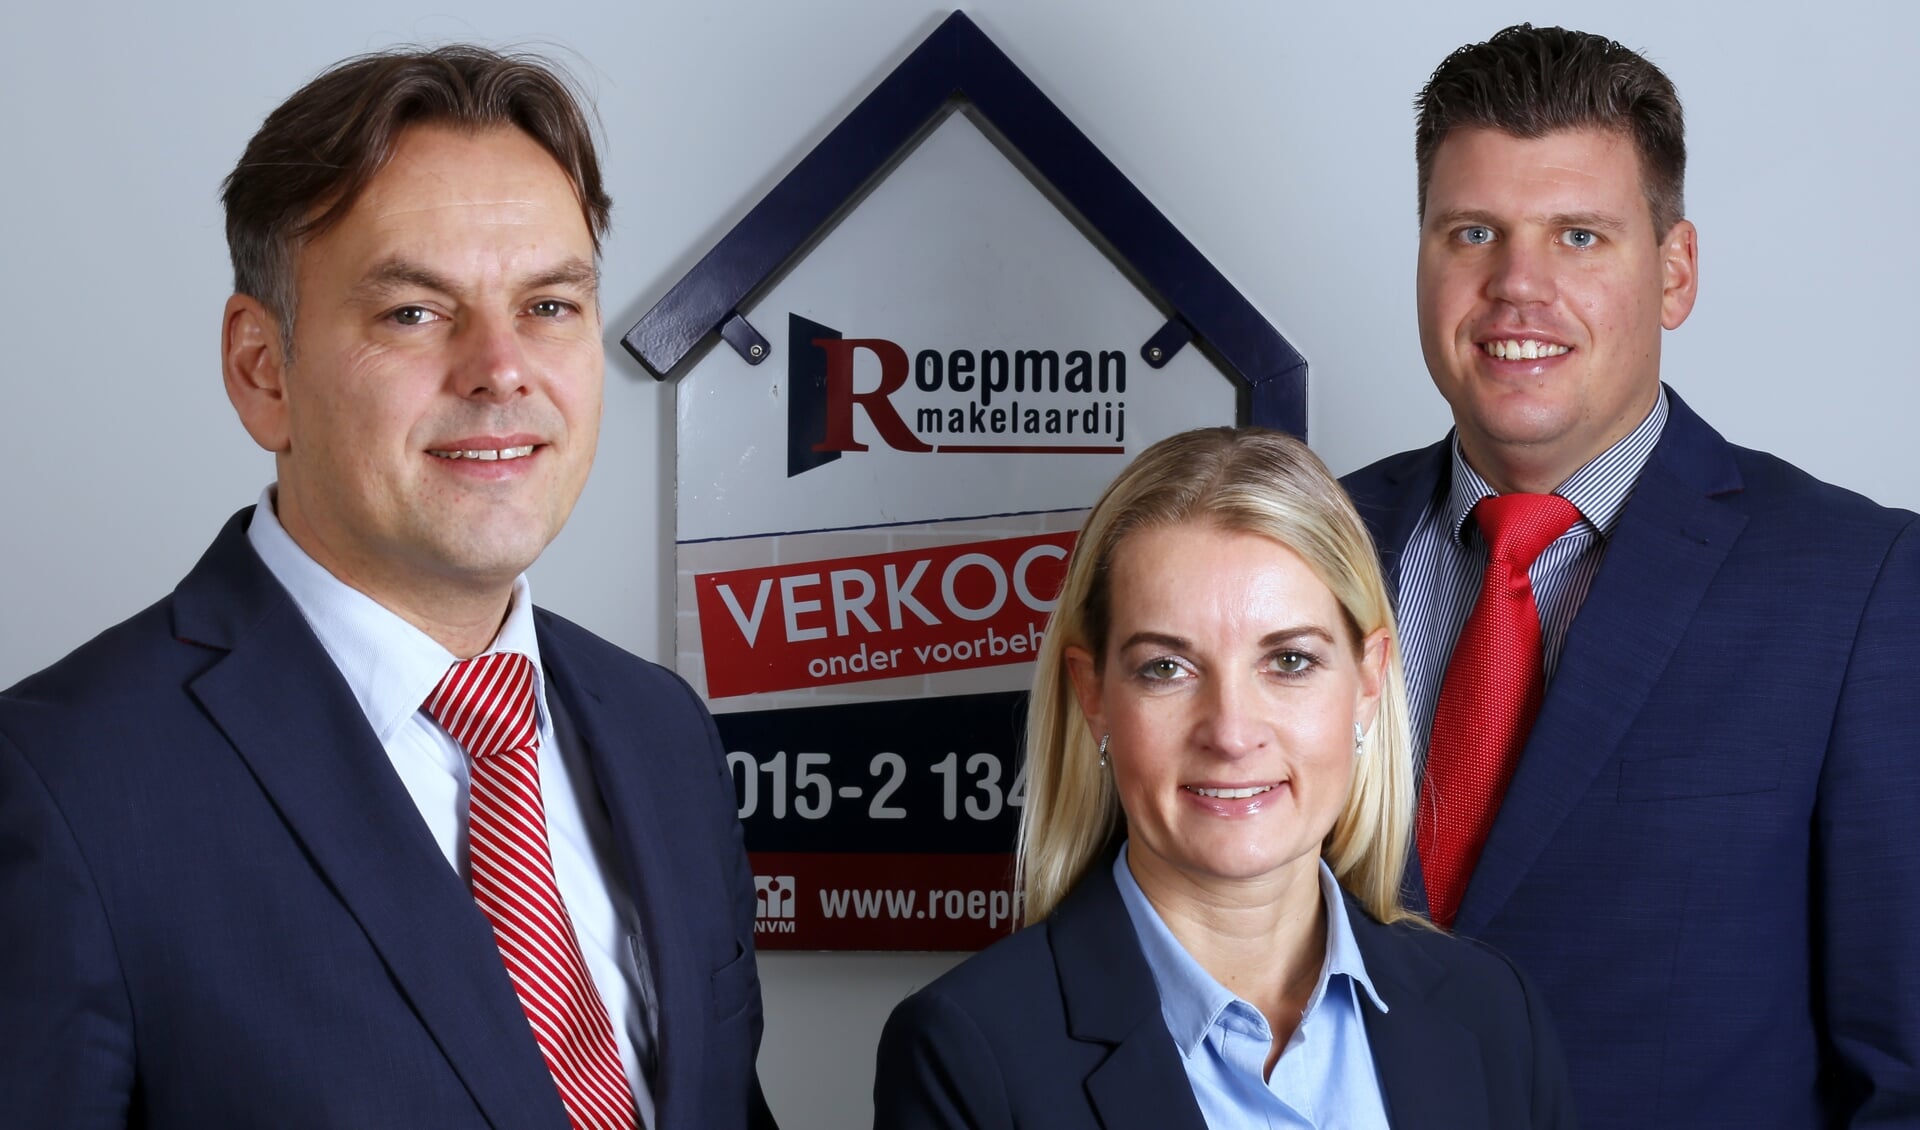 Het team van Roepman Makelaardij, met van links naar rechts Ronald Roepman, Nicole Dekker en Martijn Sinnema.